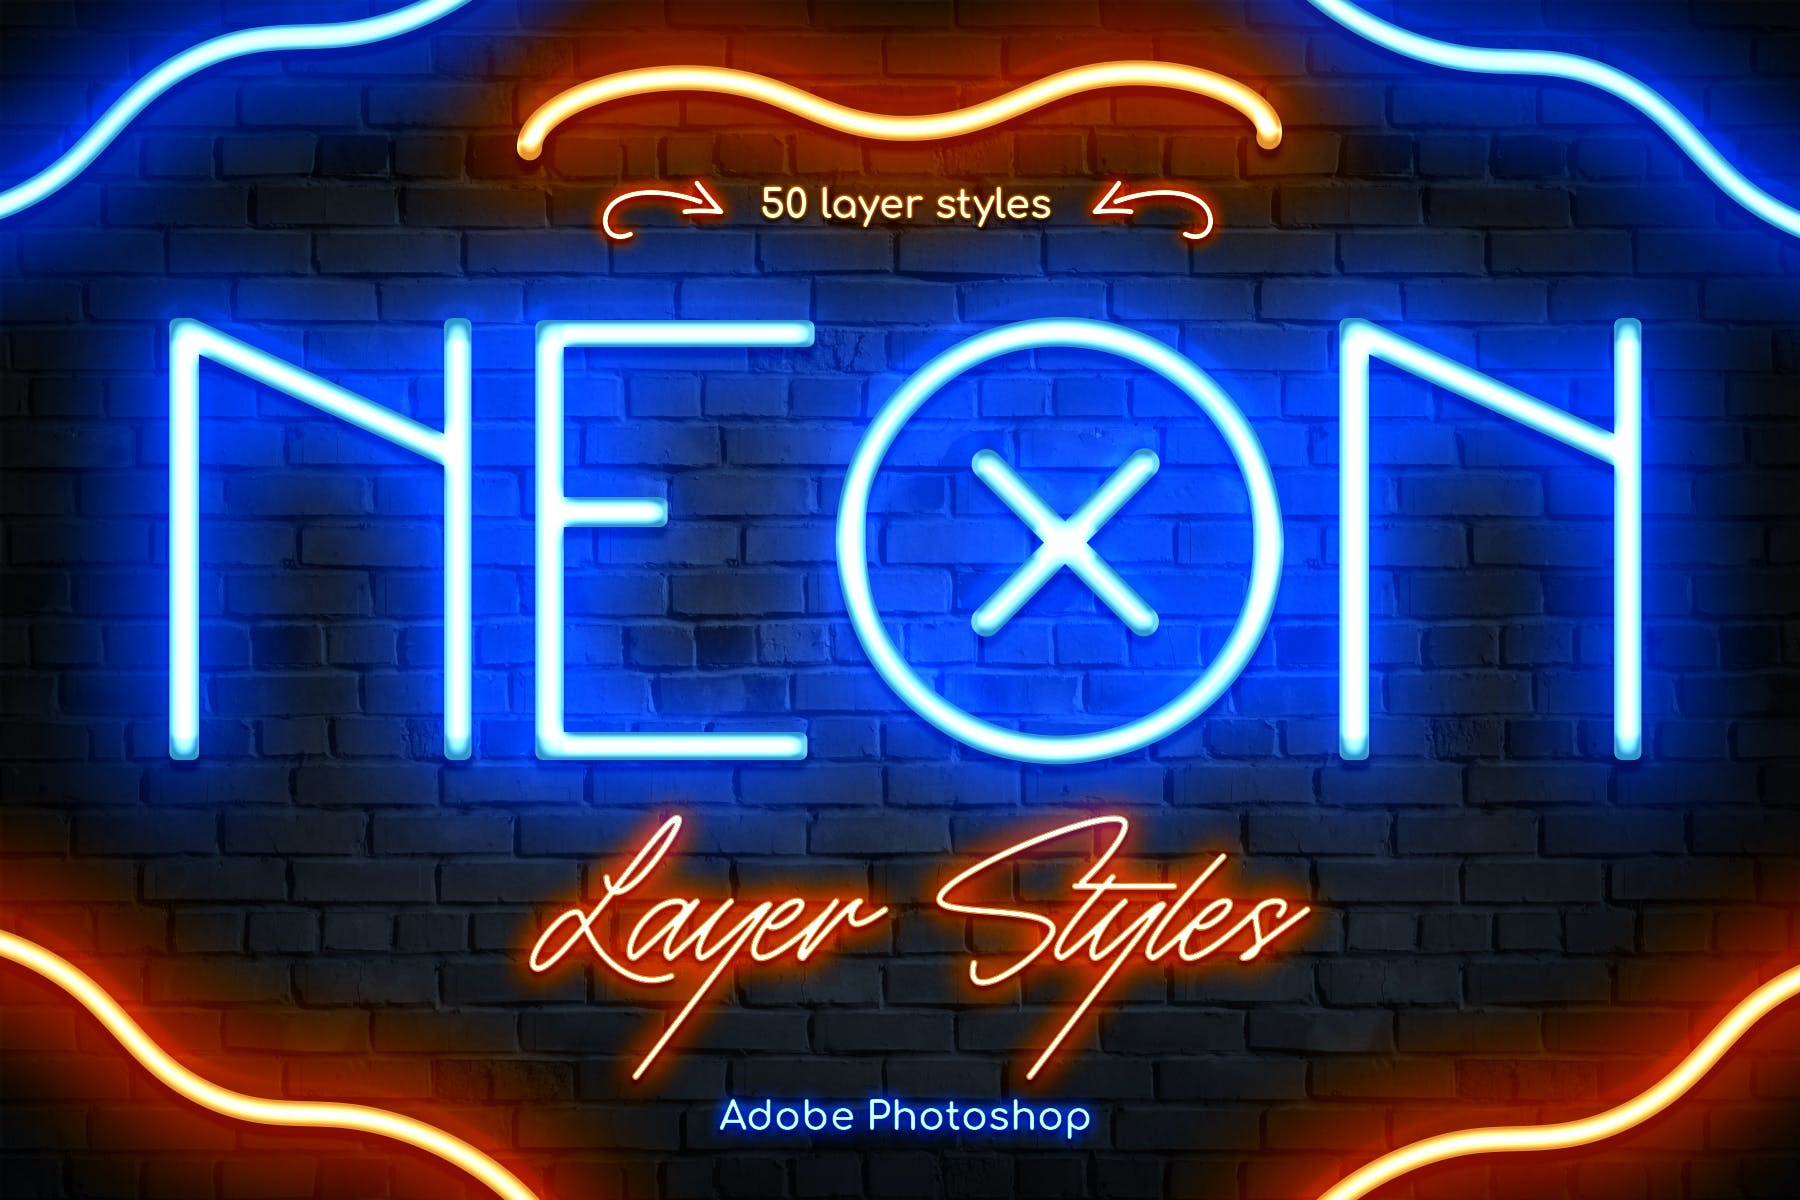 发光霓虹灯Photoshop图层样式 Neon Photoshop Layer Styles 图片素材 第1张